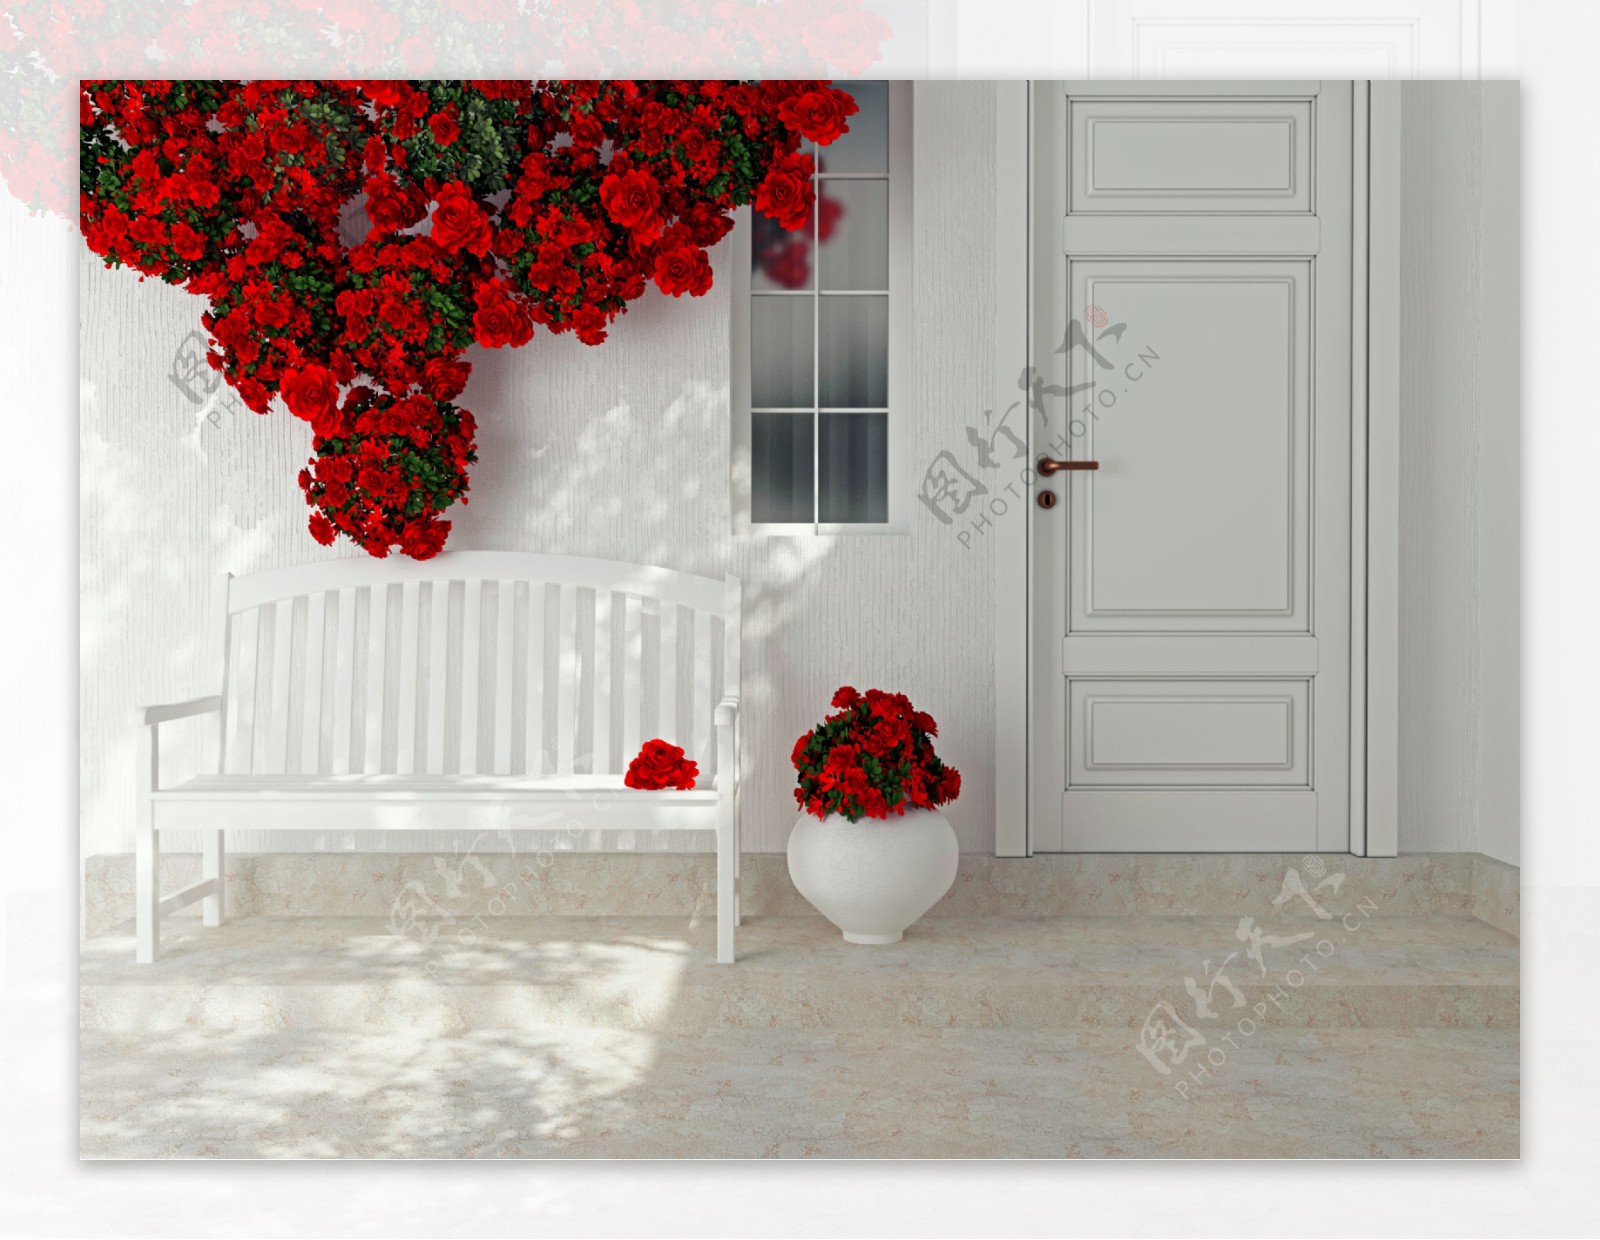 红色鲜花与白色的长椅